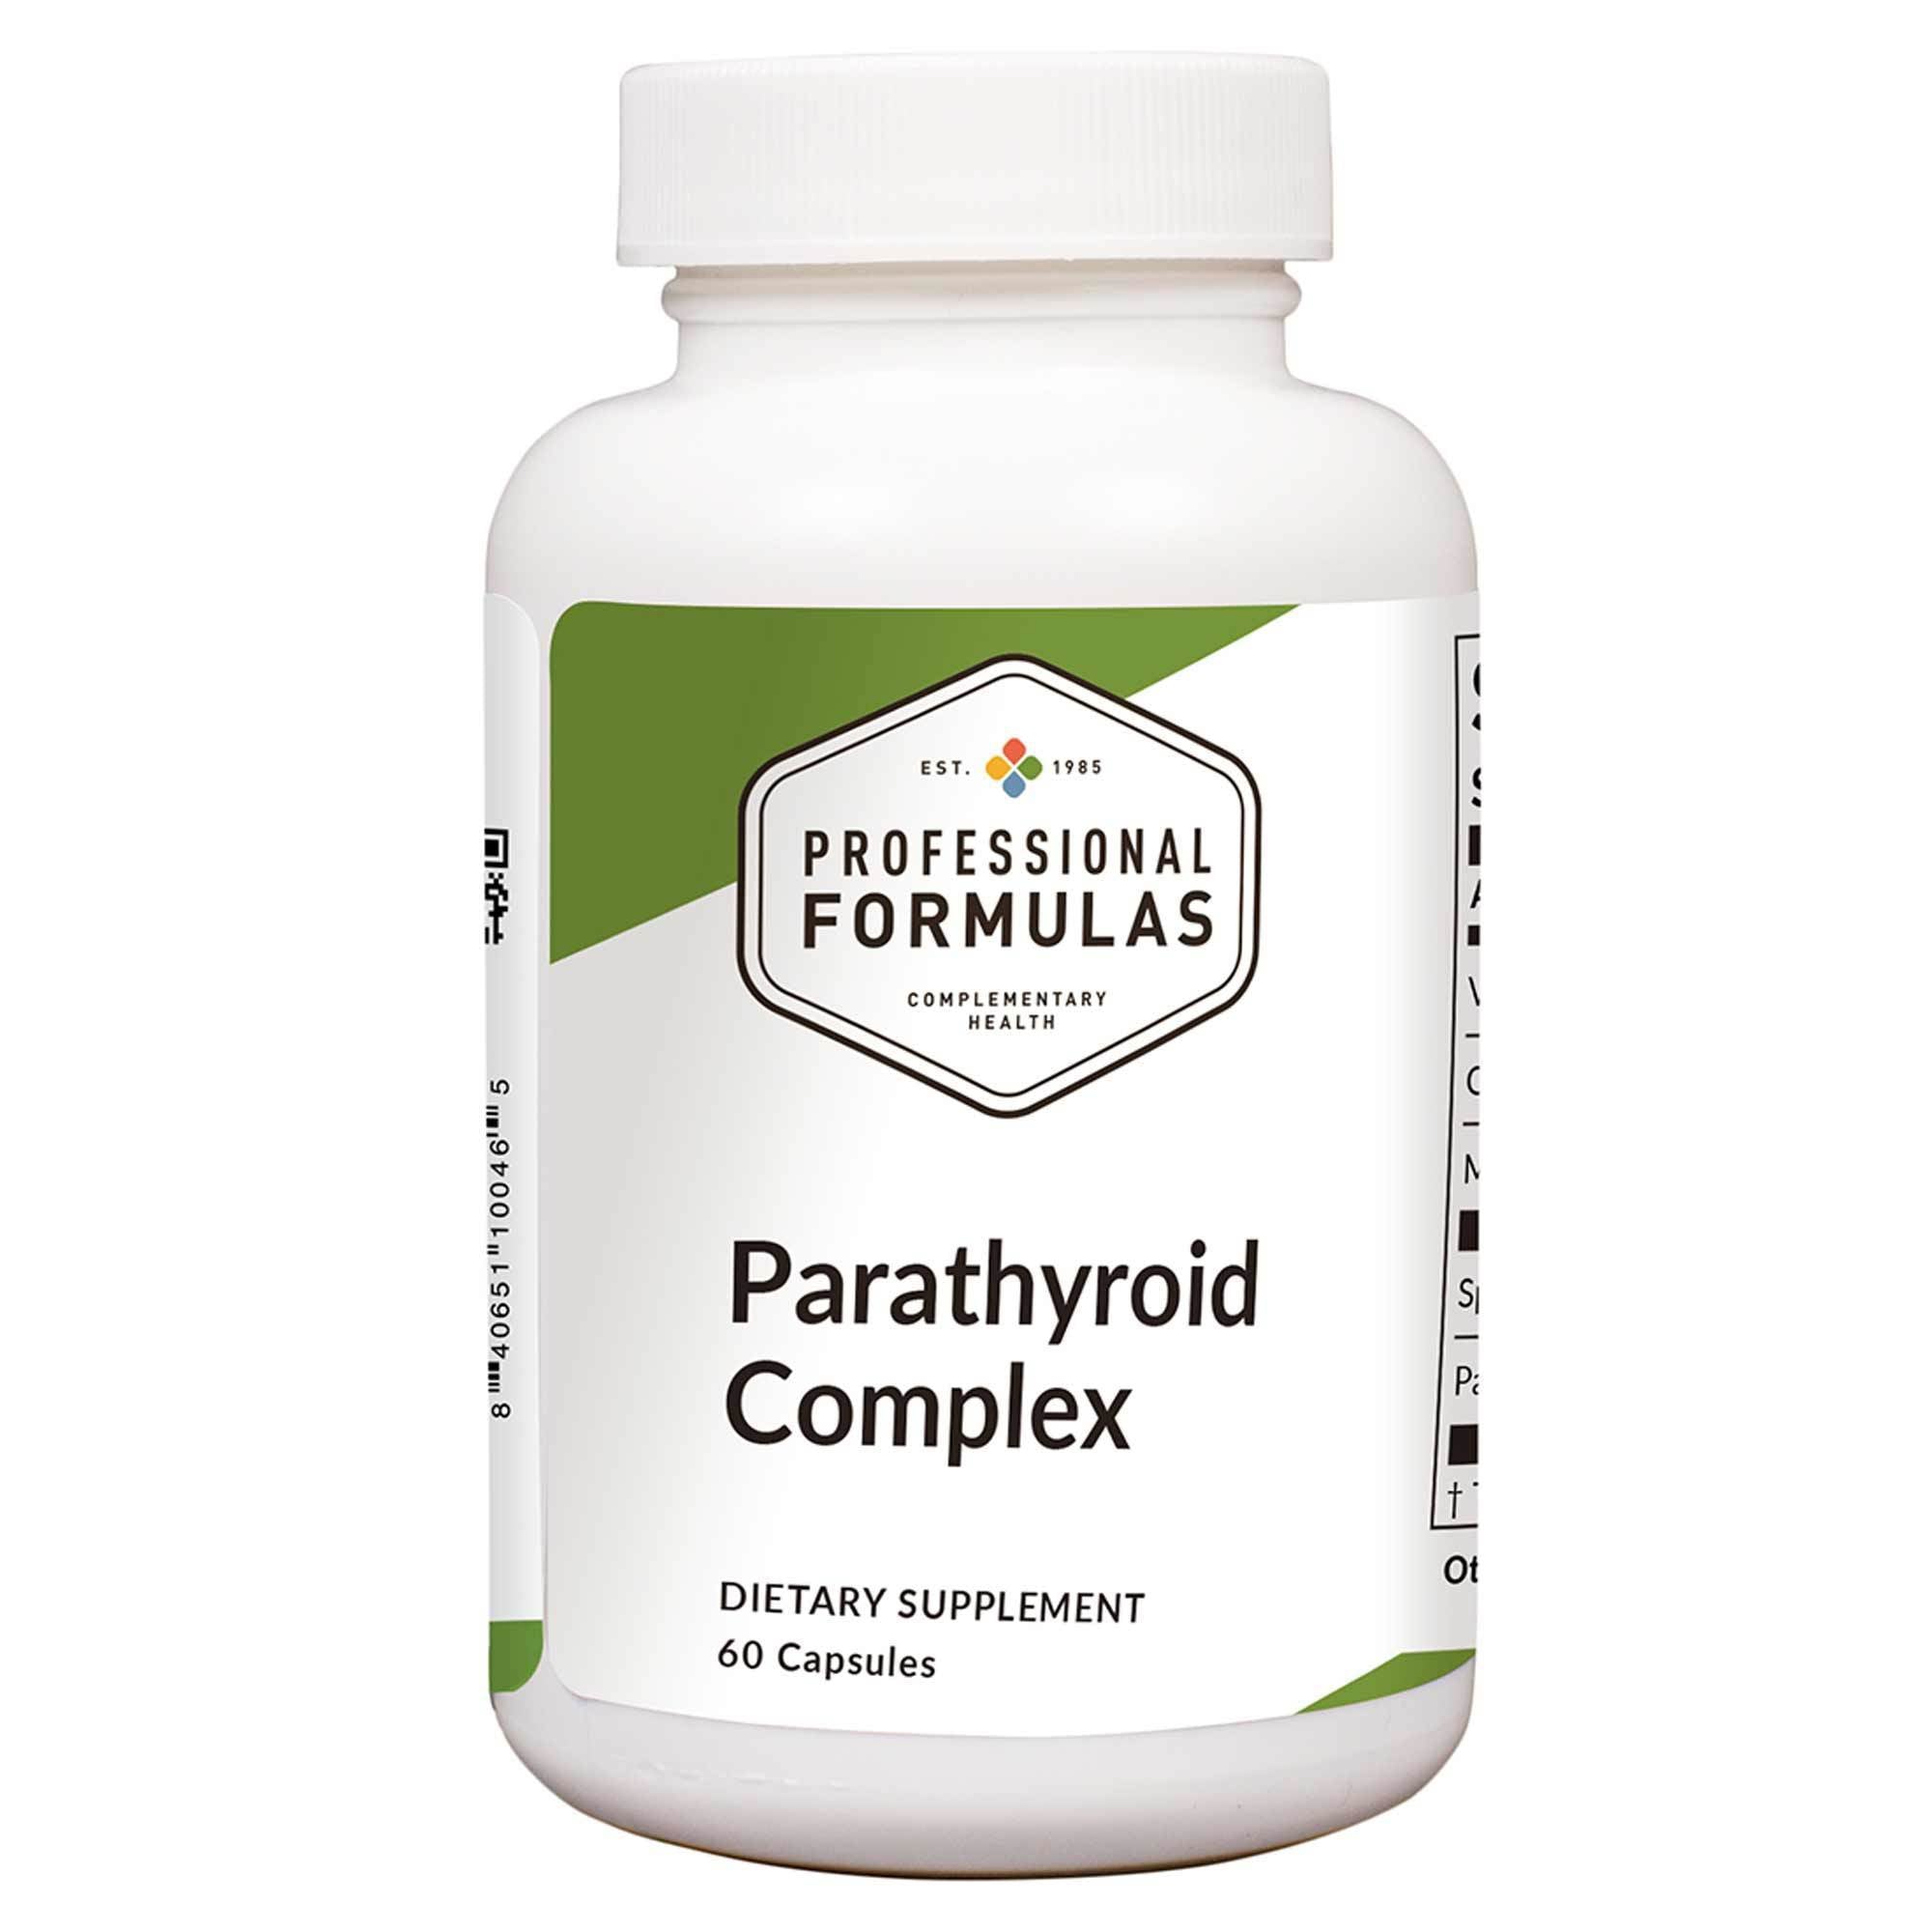 Professional Formulas Parathyroid Complex 60 Capsules - 2 Pack